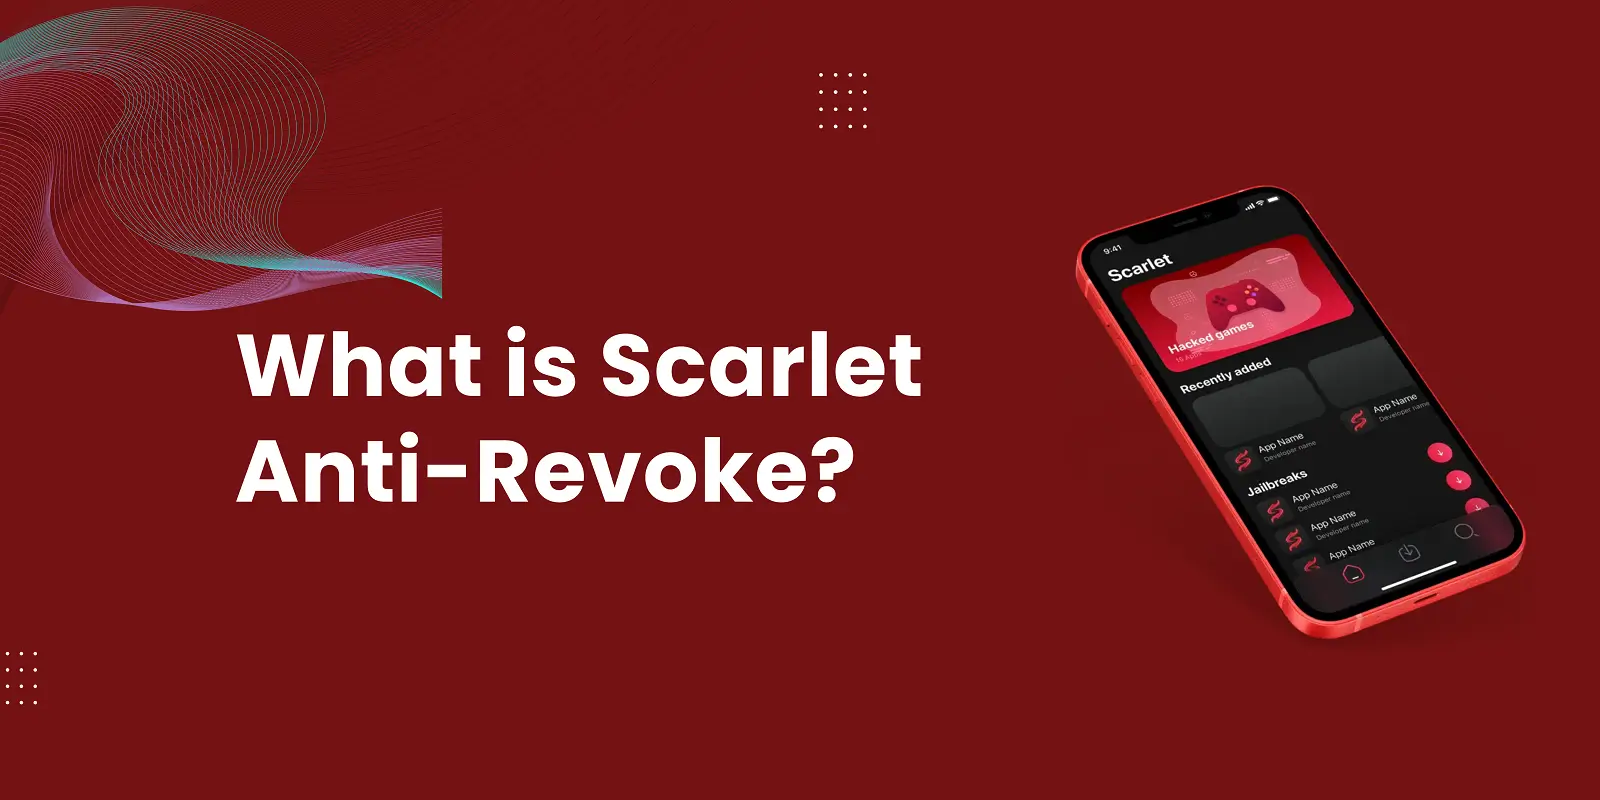 What is Scarlet Anti-Revoke?